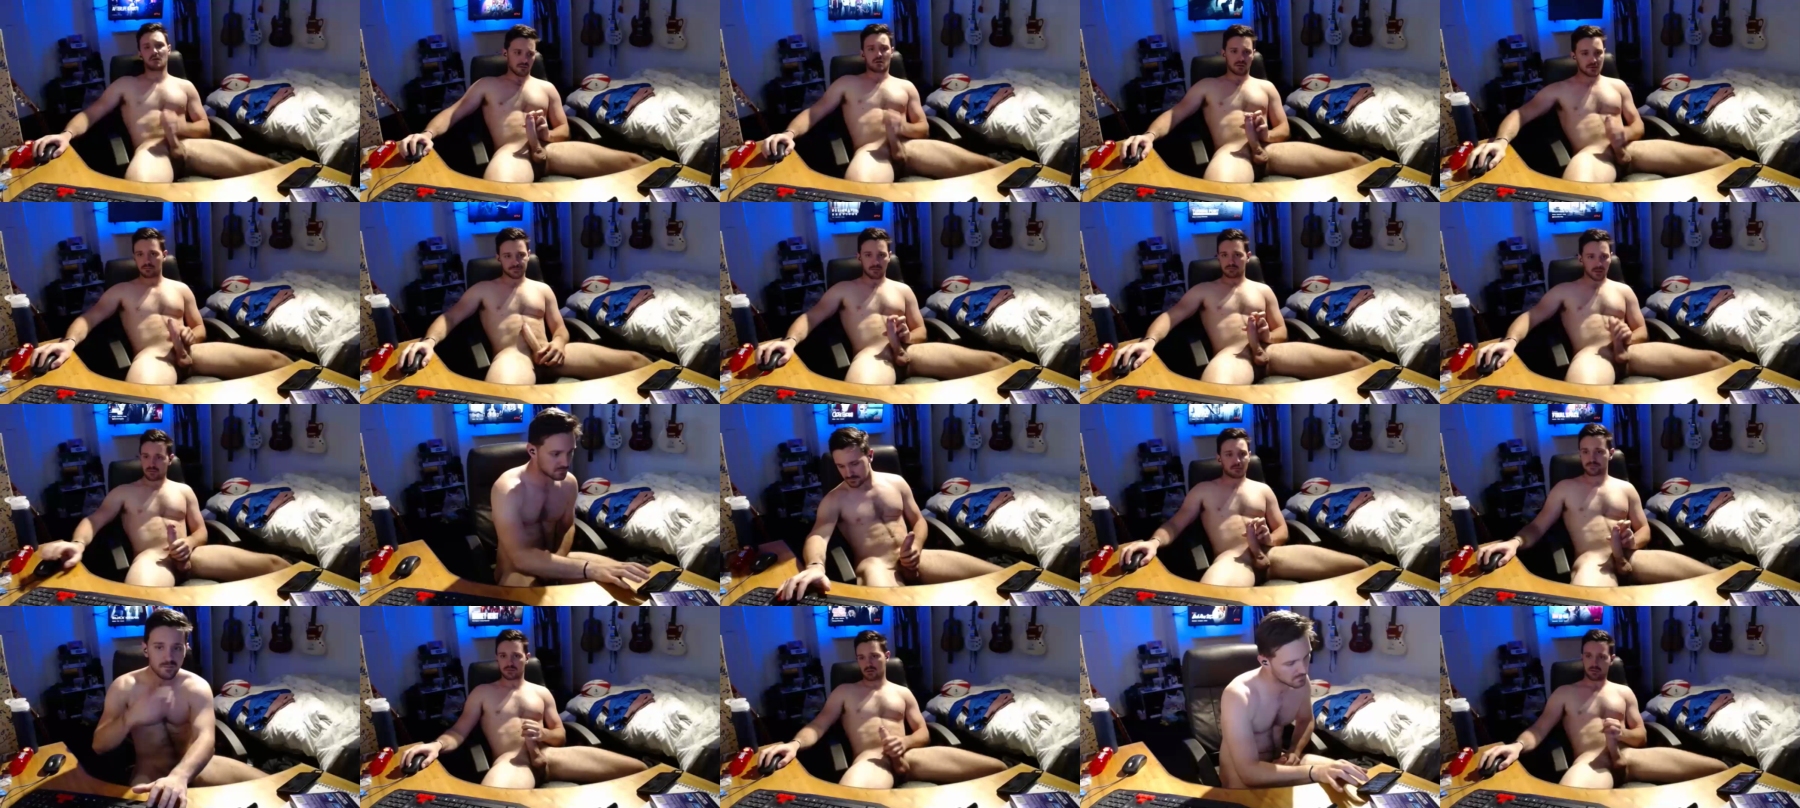 Rugbyboy94  27-08-2021 Male Webcam